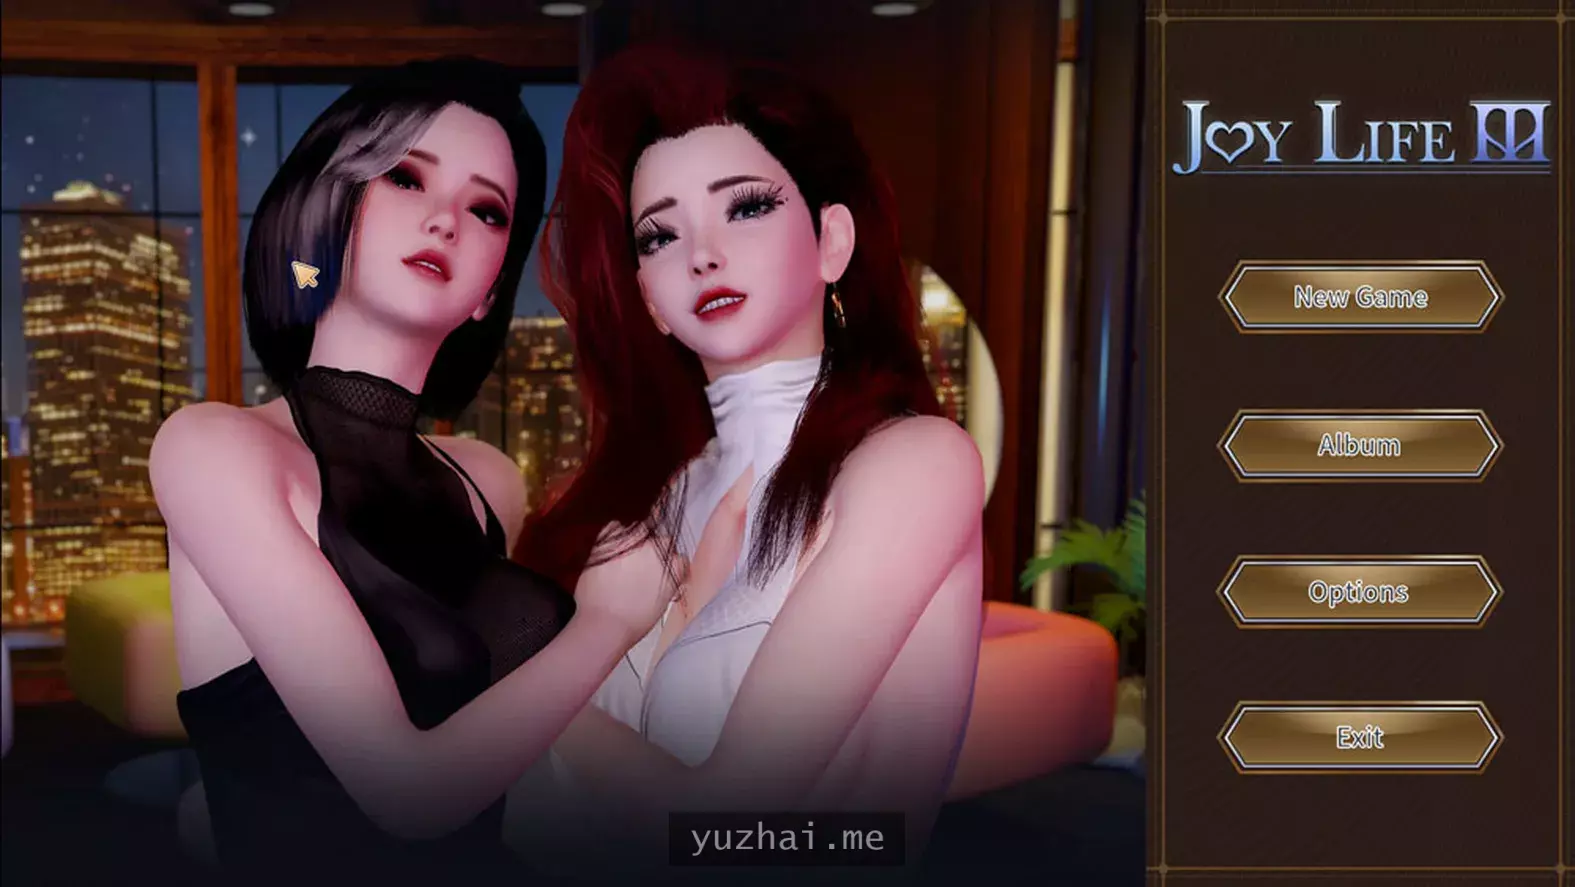 快乐生活3 Joy Life 3 STEAM官方中文无修版[500M] 电脑游戏 第1张